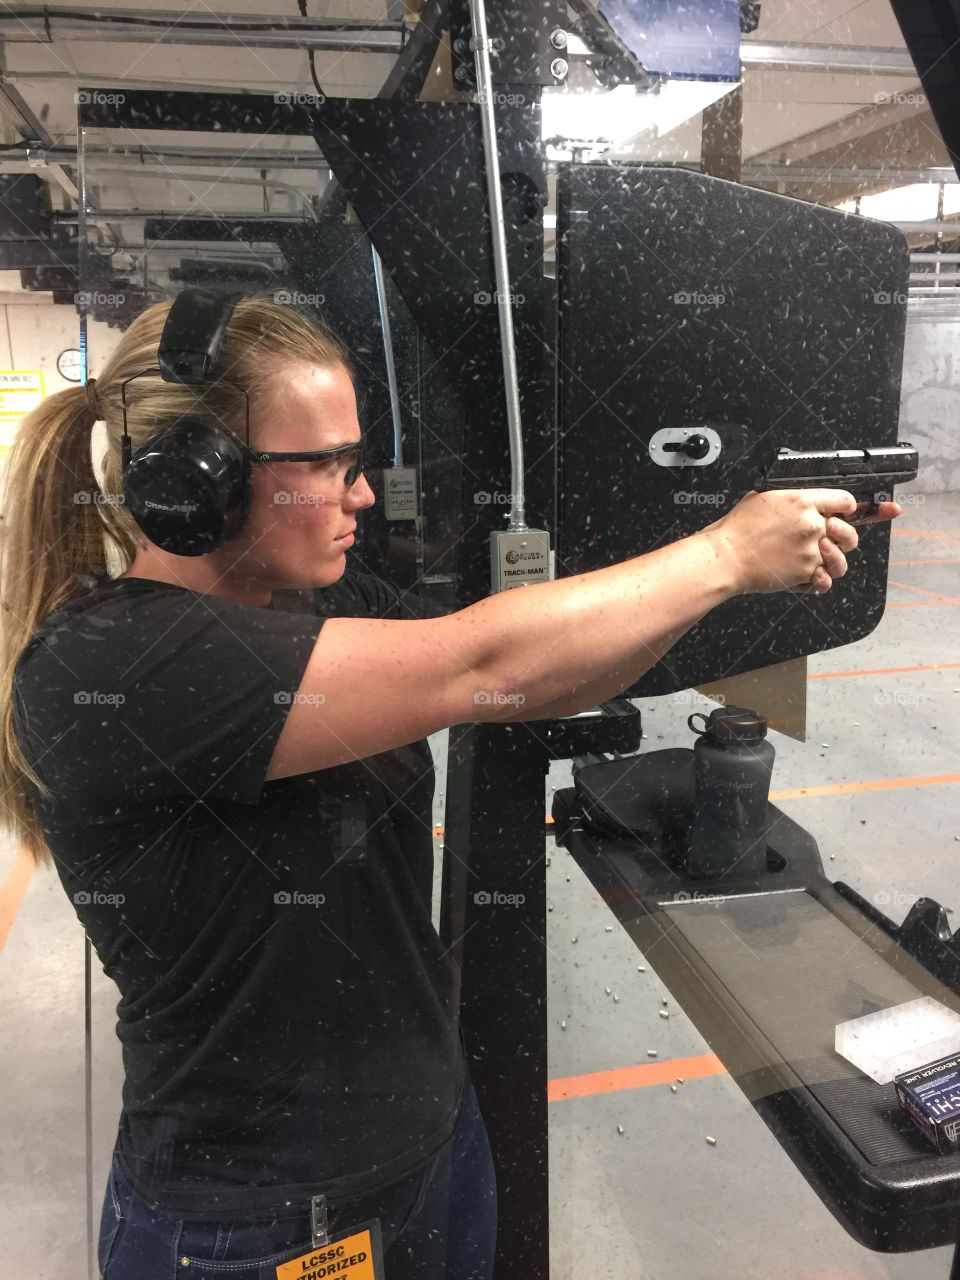 Woman shooting gun at shooting range